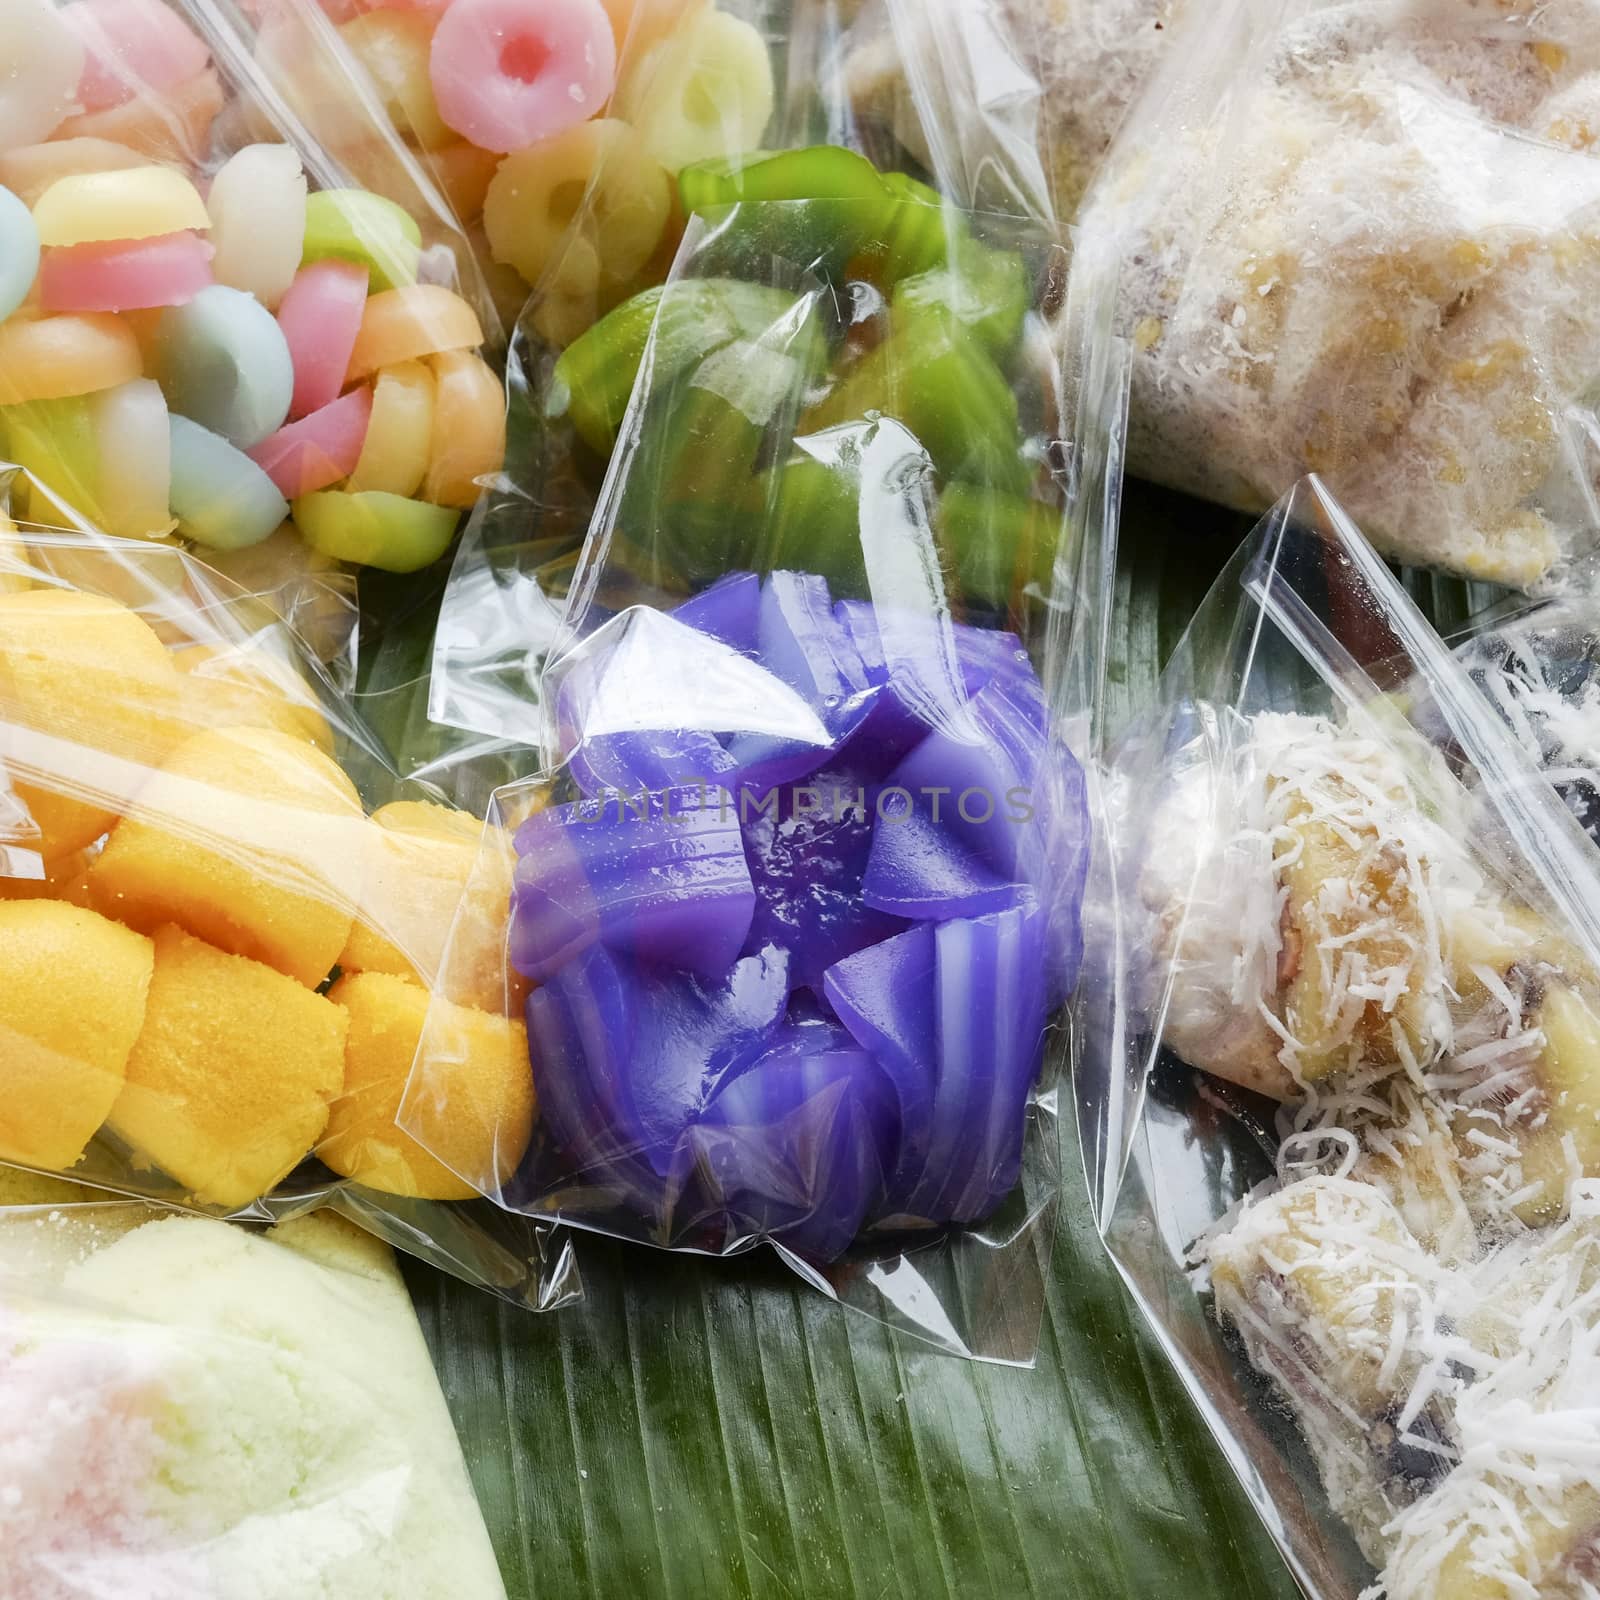 Thai dessert - many kind of Thai dessert in plastic bag at marke by art9858